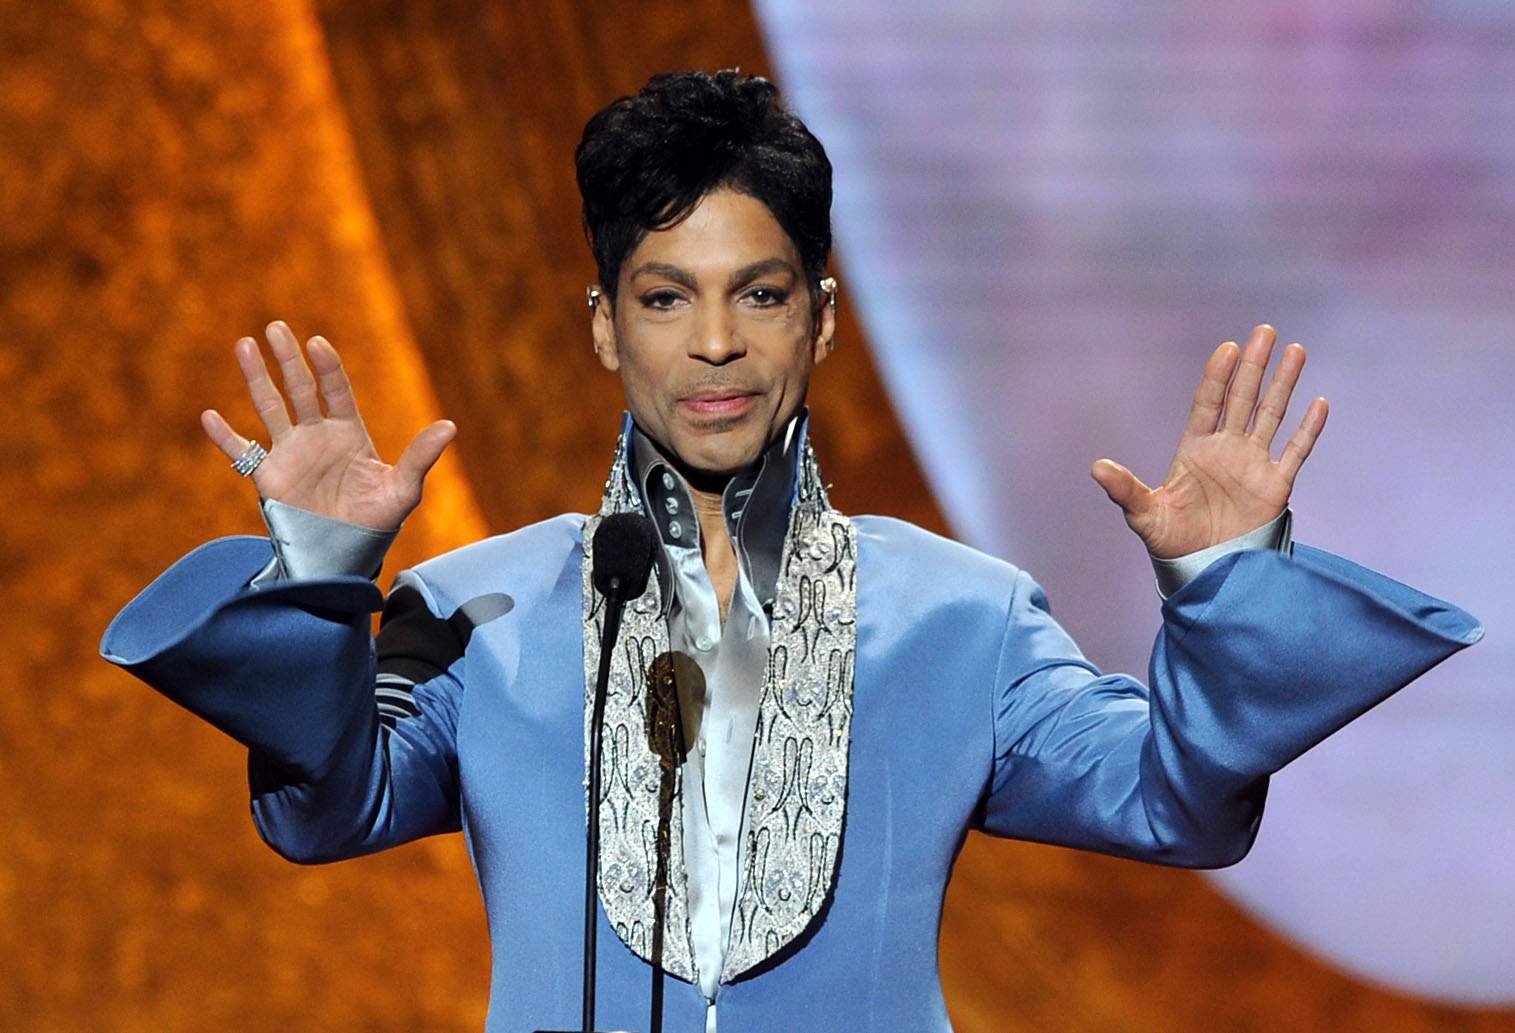 Prince tenía en su casa pastillas mal etiquetadas que contenían fentanilo